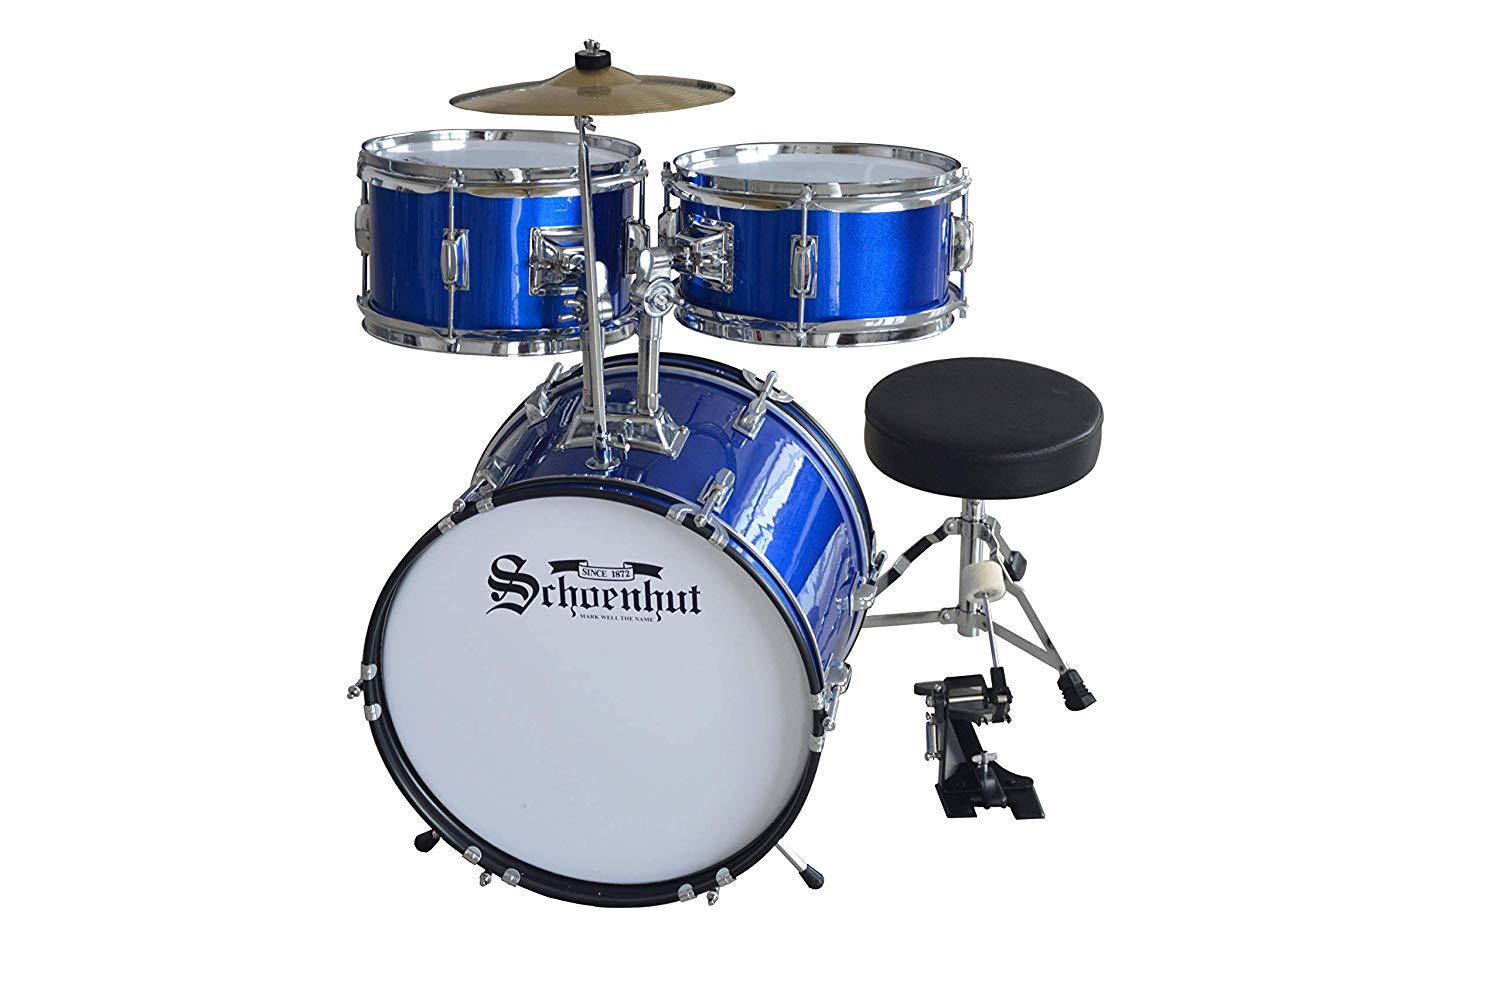 Schoenhut C1030 5-Piece Children's Drum Set with Throne Pedal and Sticks Blue New